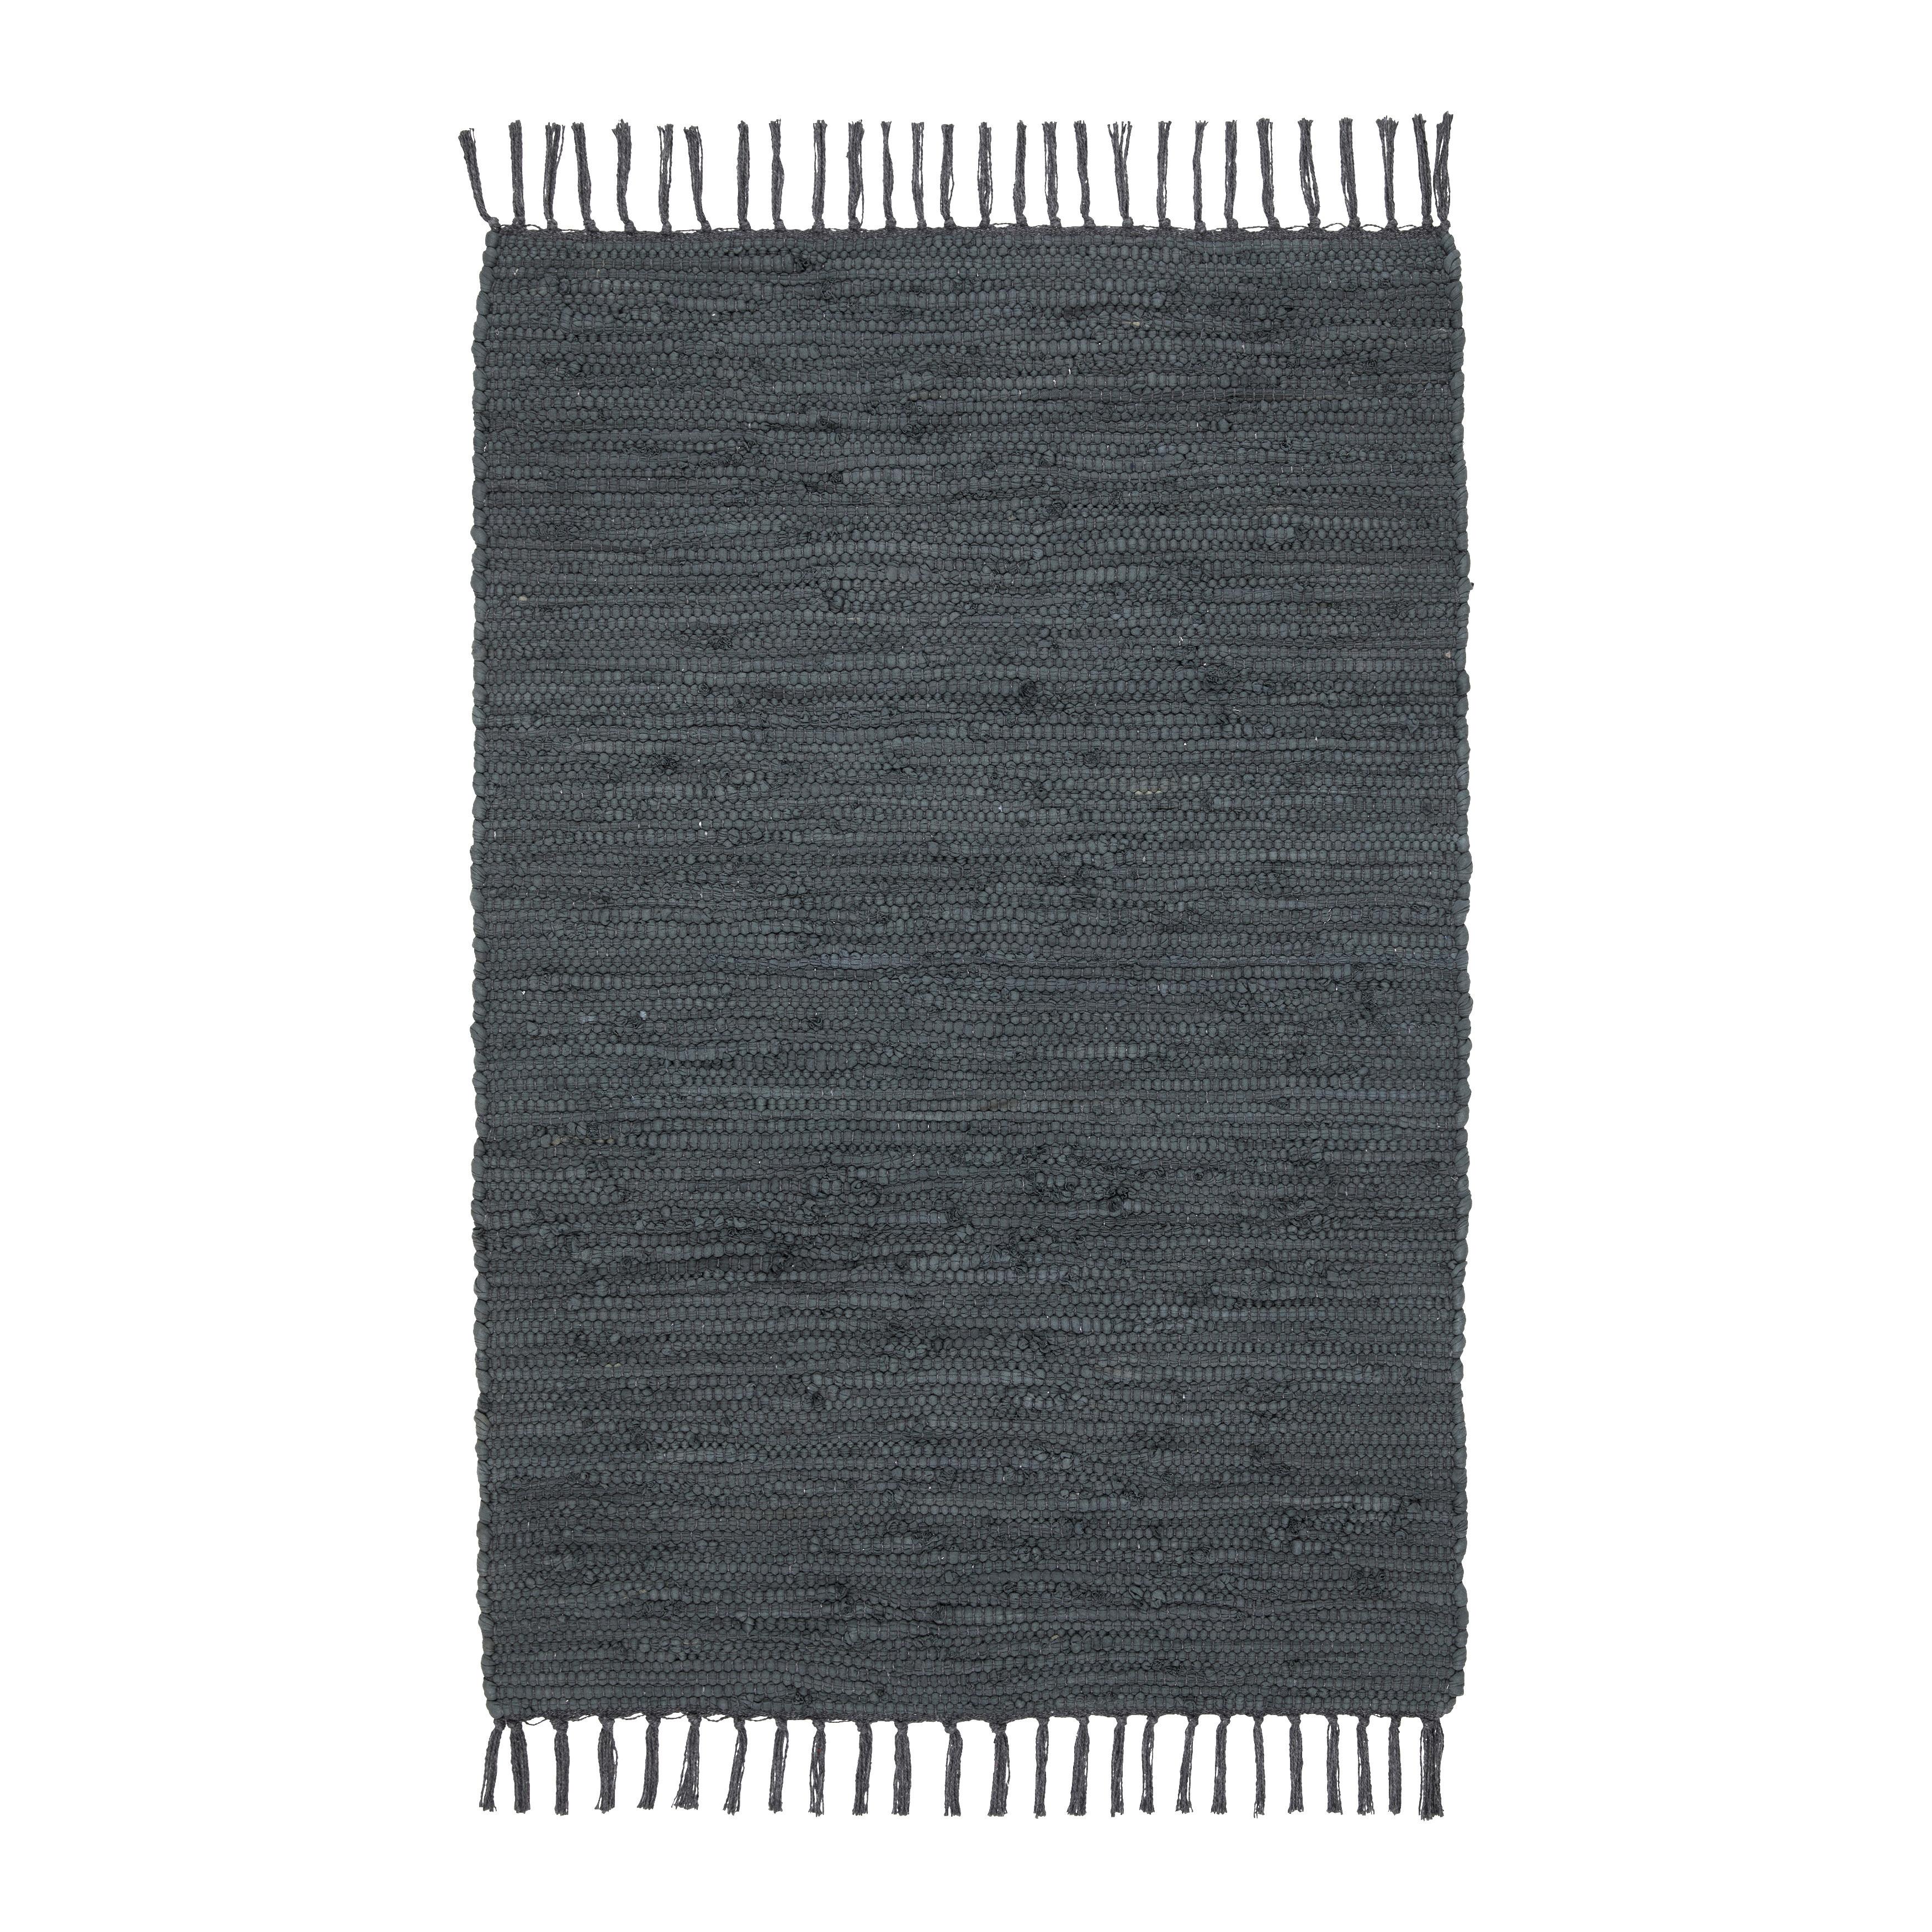 Tkaný handričkový koberec JULIA 1, š/d: 60/90cm - tmavosivá, Romantický / Vidiecky, textil (60/90cm) - Modern Living